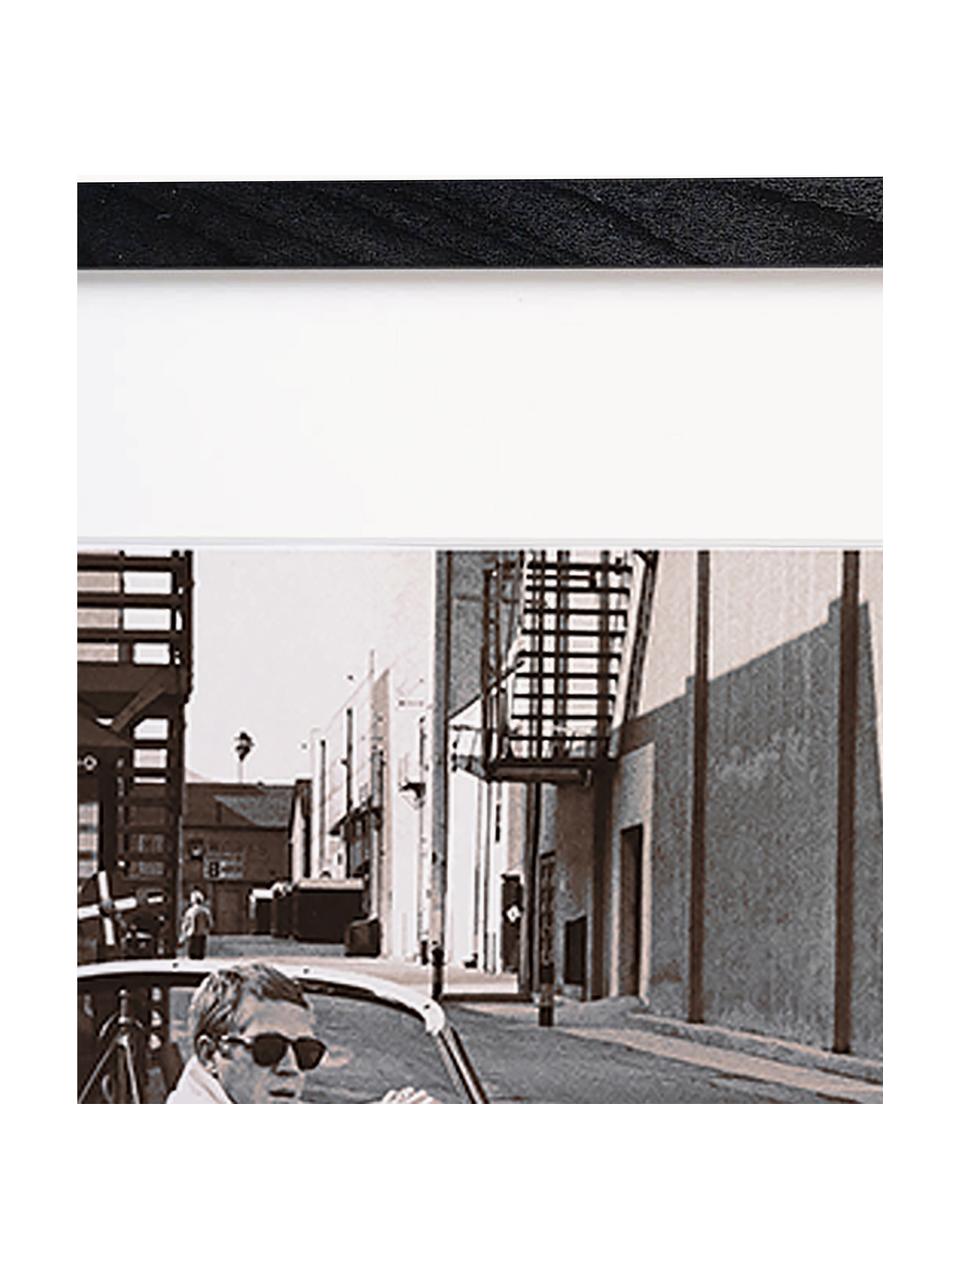 Ingelijste print Steve McQueen in zijn Jaguar, Lijst: beukenhout FSC-gecertific, Zwart, gebroken wit, B 43 x H 33 cm